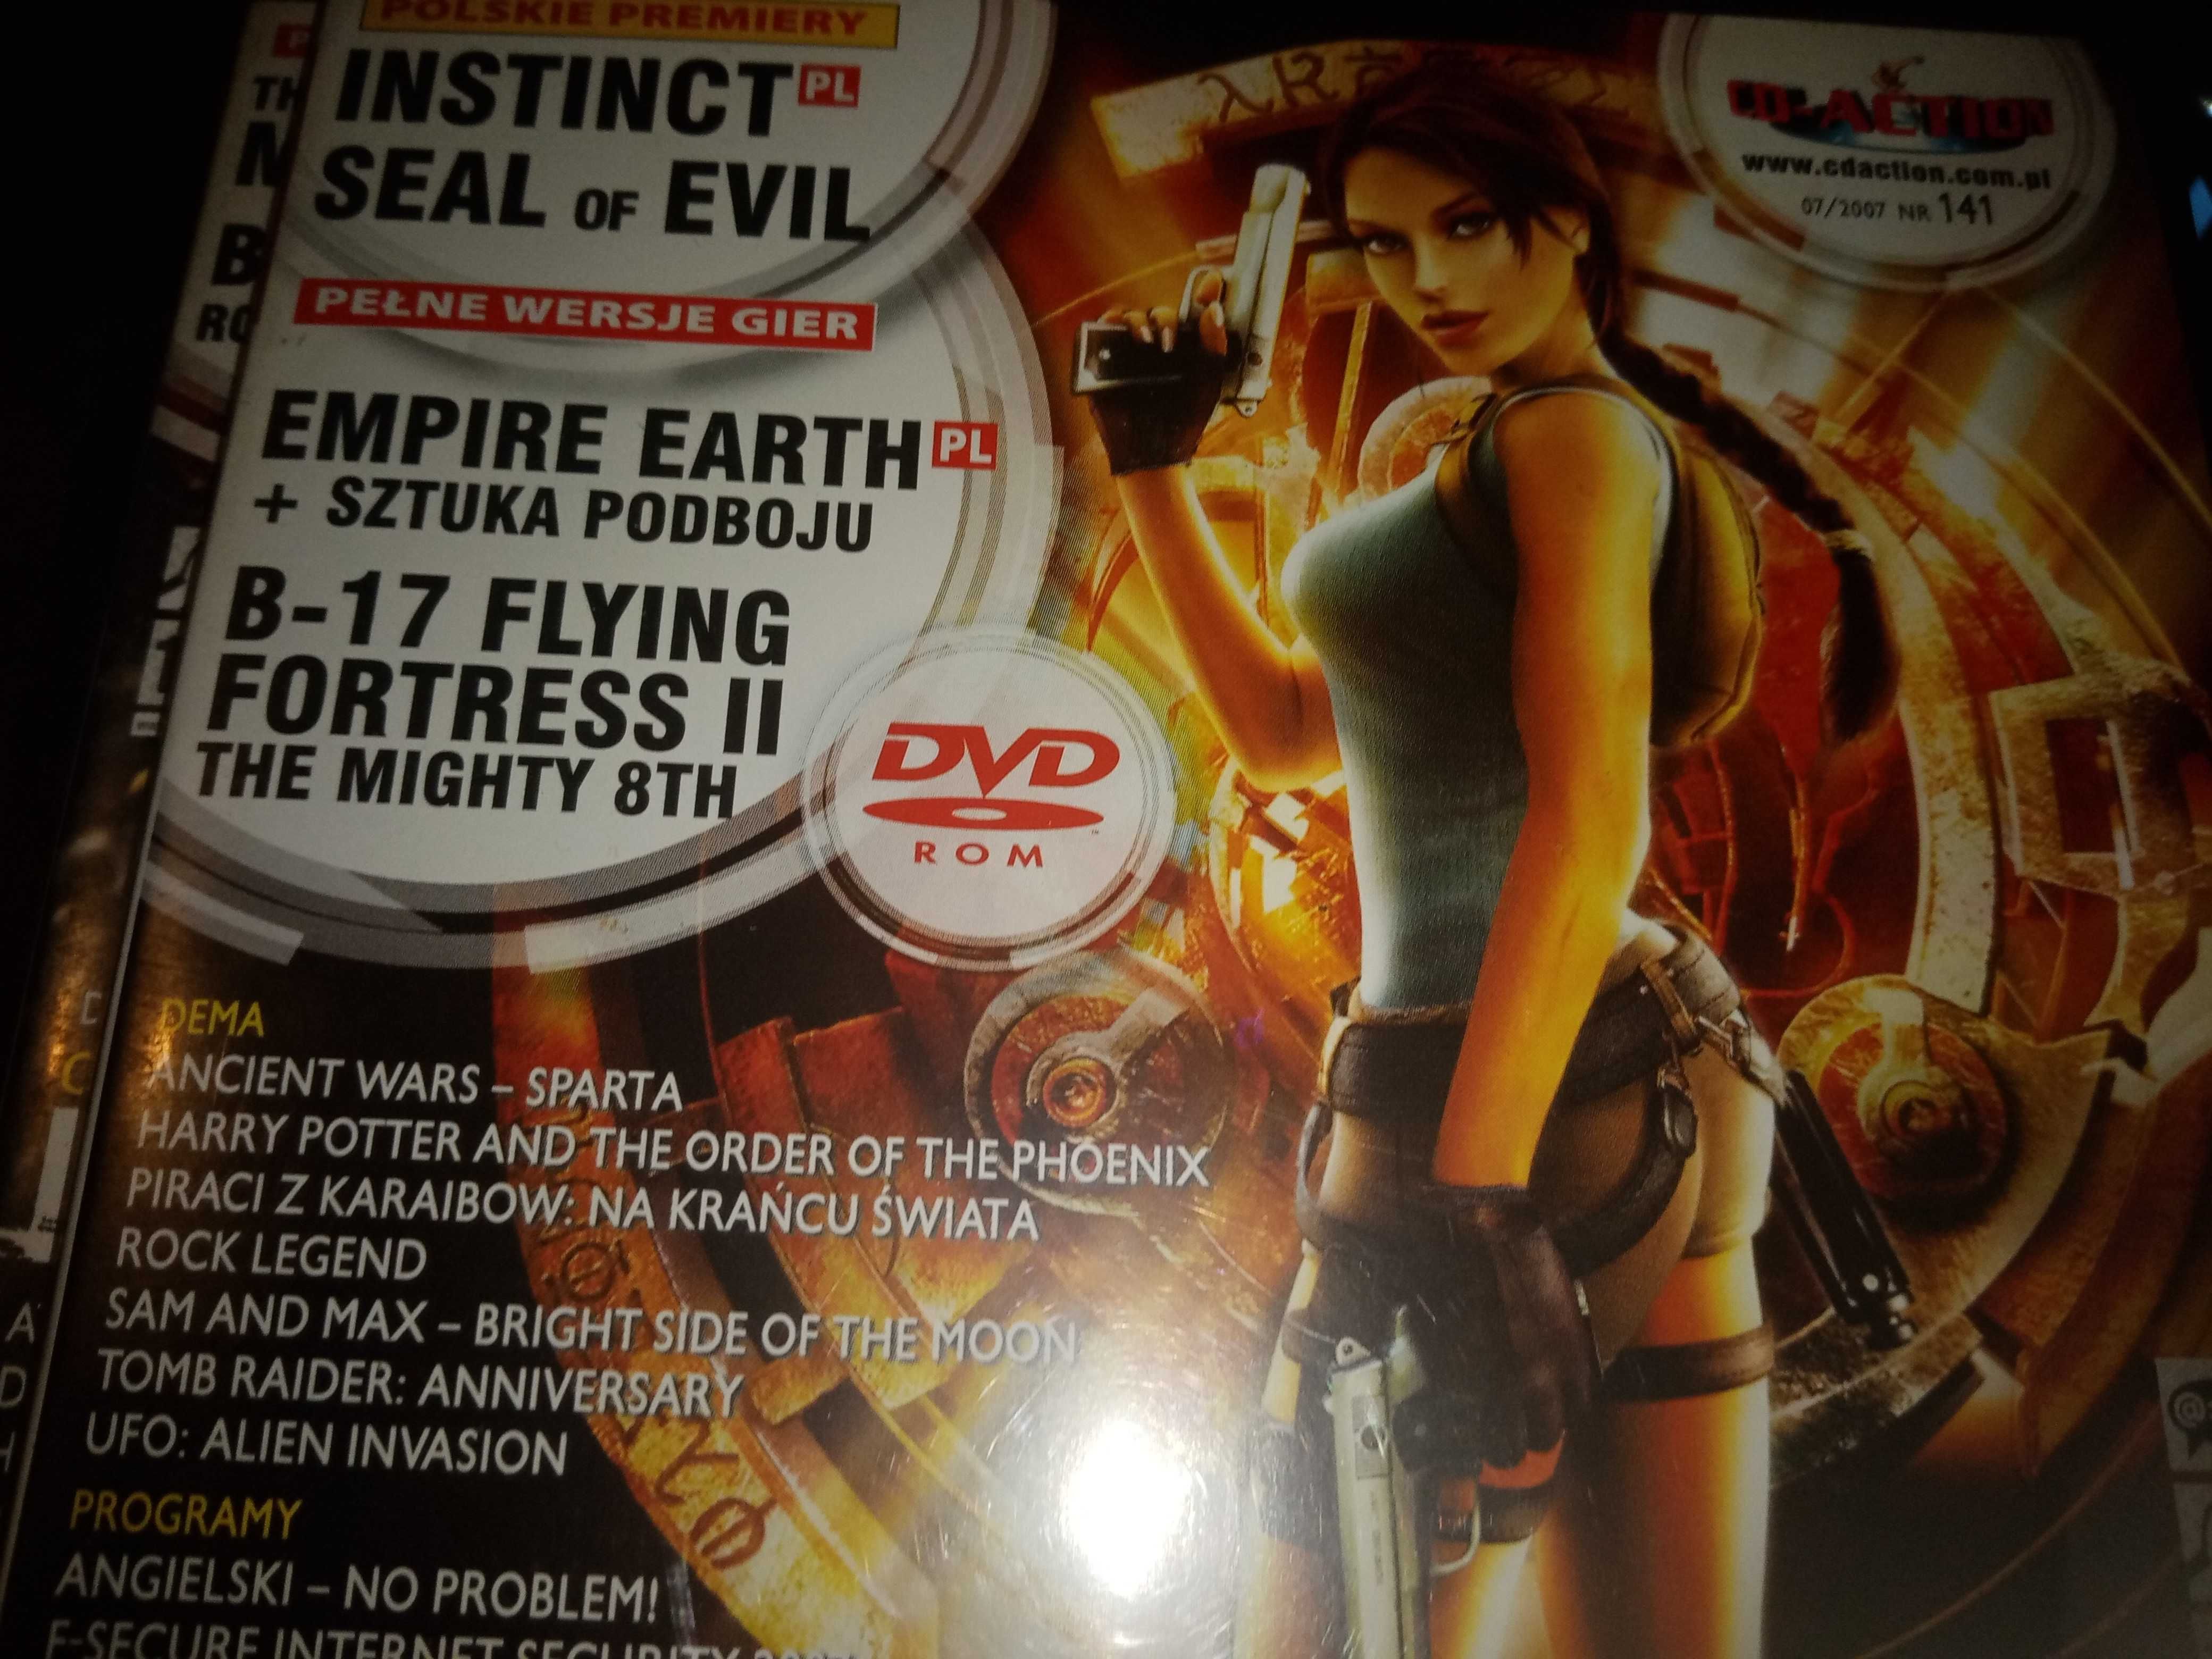 CD-ACTION 7/2007 #141 - Empire Earth + dodatek, Instinct, Seal of Evil